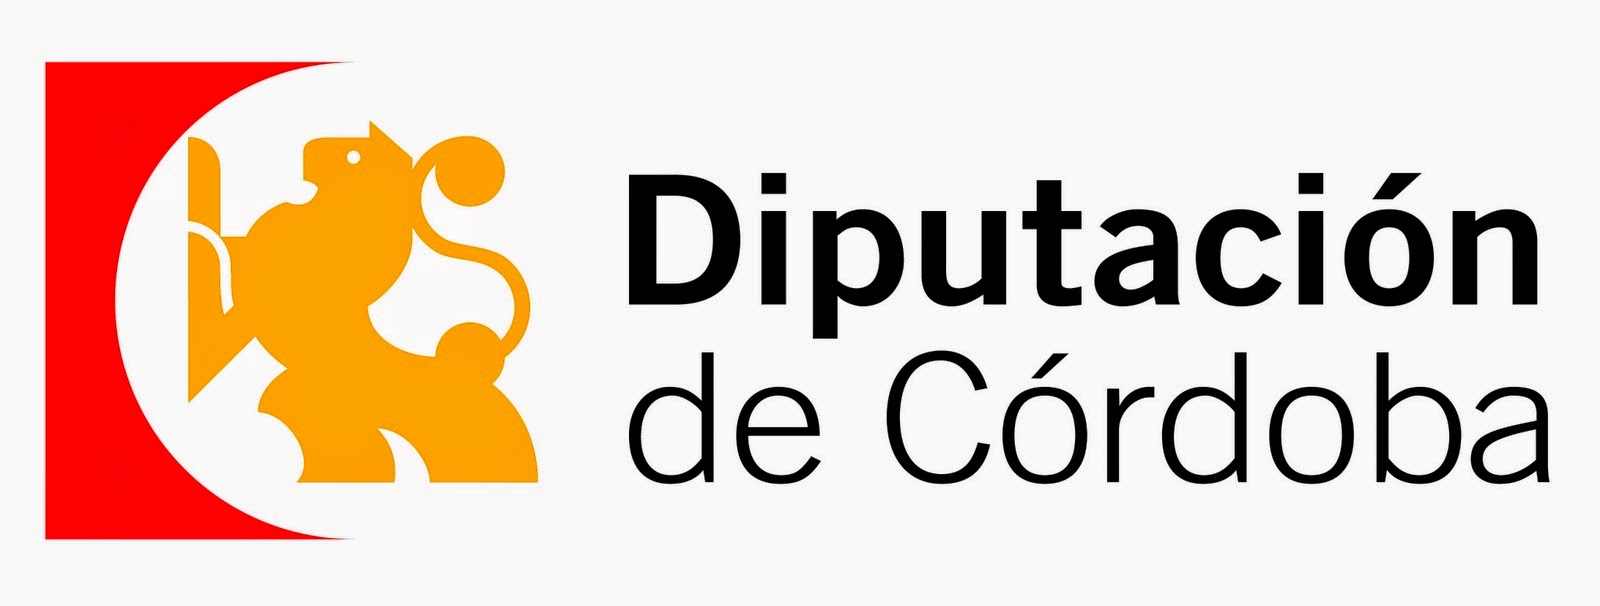 Subvencionado por la Diputación de Córdoba